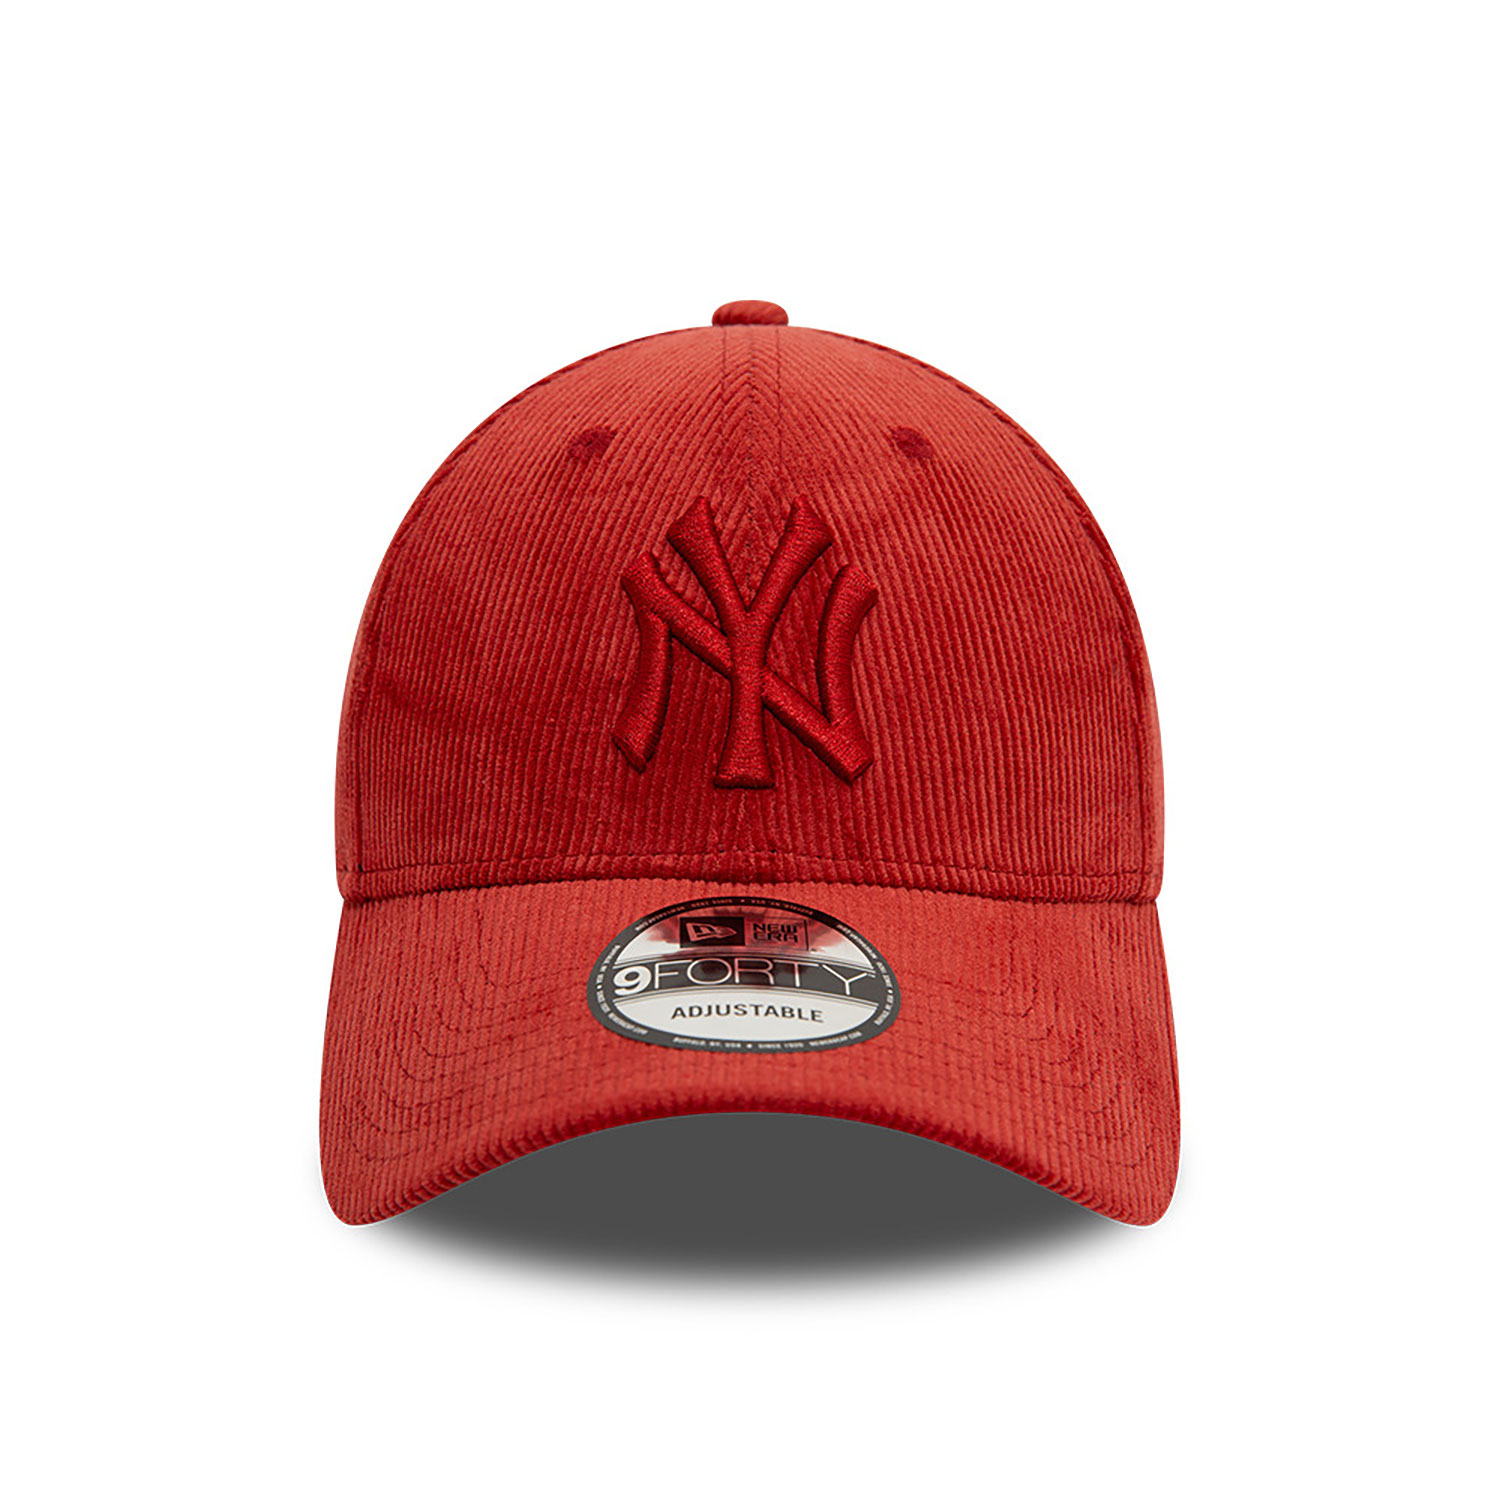 Red NY Caps & Hats | Red Yankees Caps & Hats | New Era Cap PL